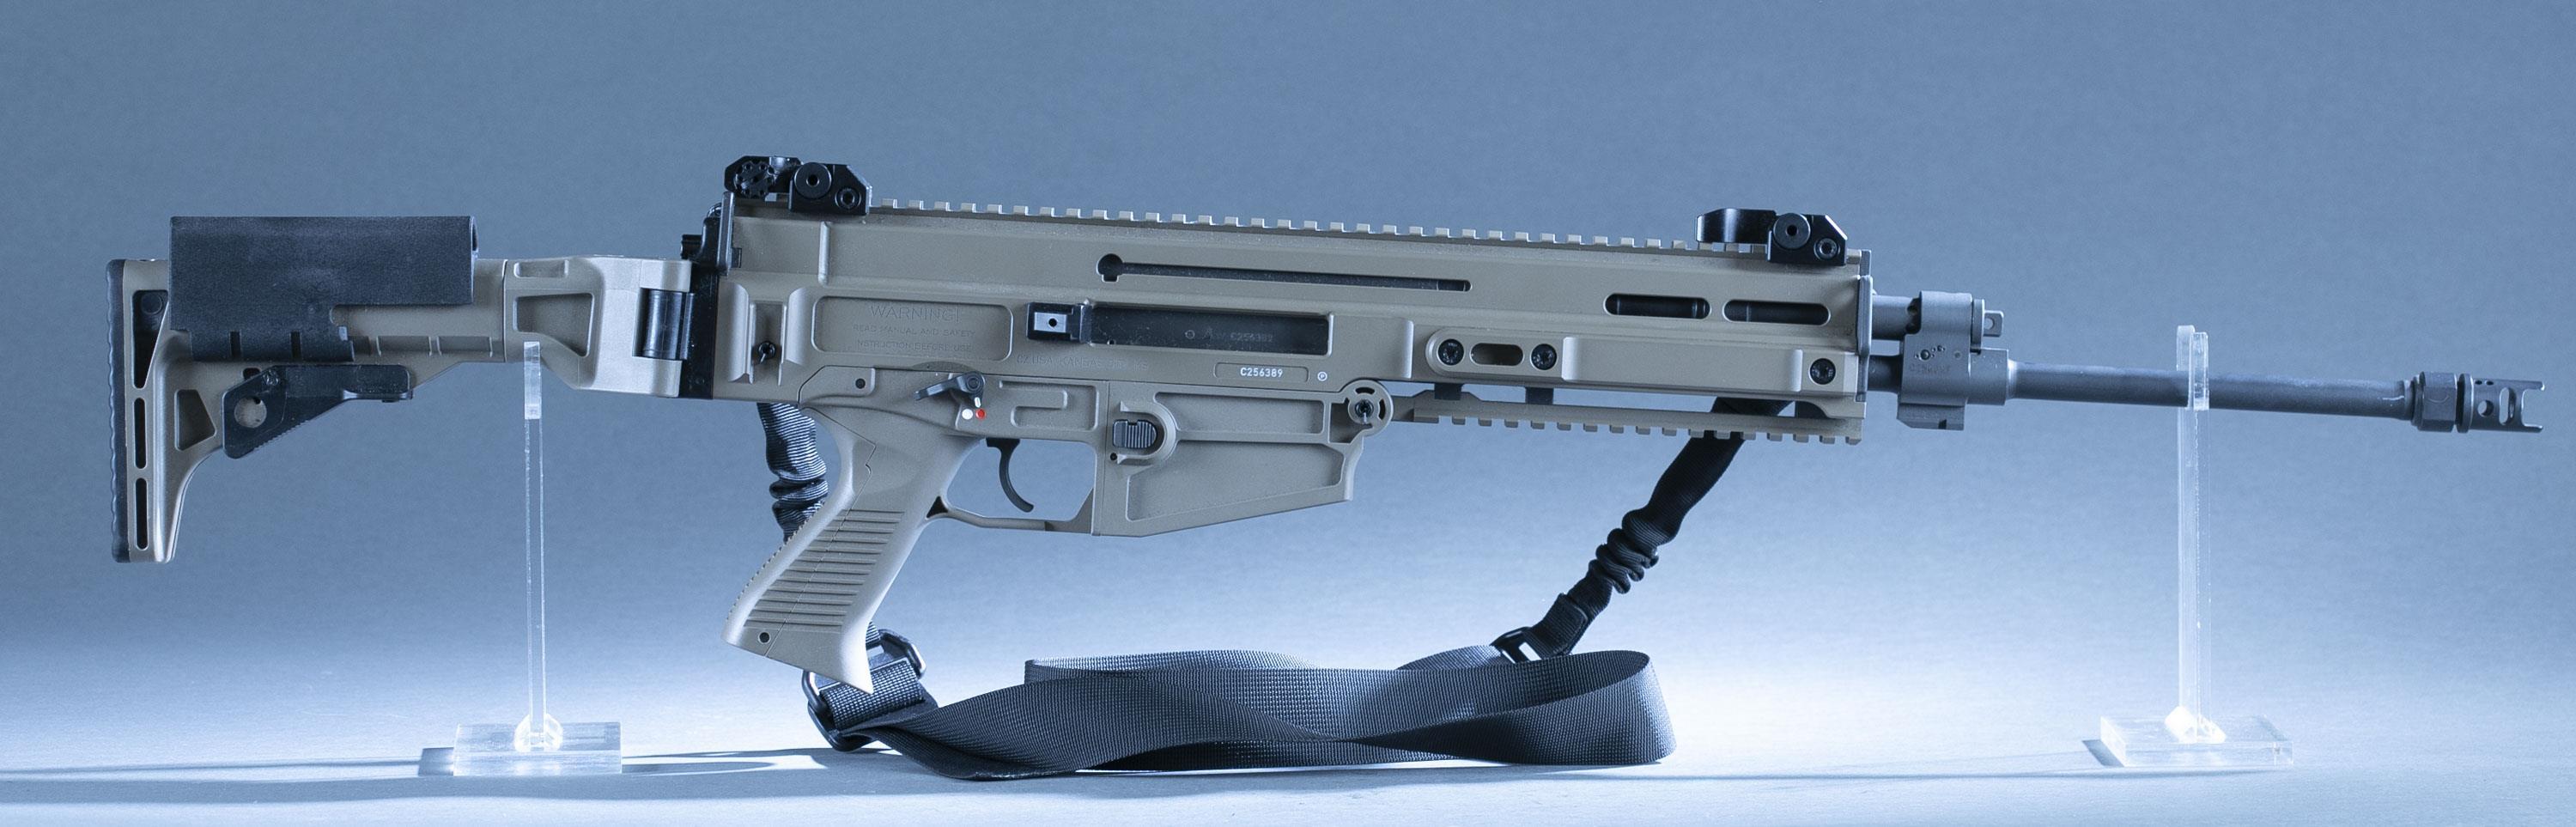 CZ 805 S1 BREN carbine, 5.56 NATO